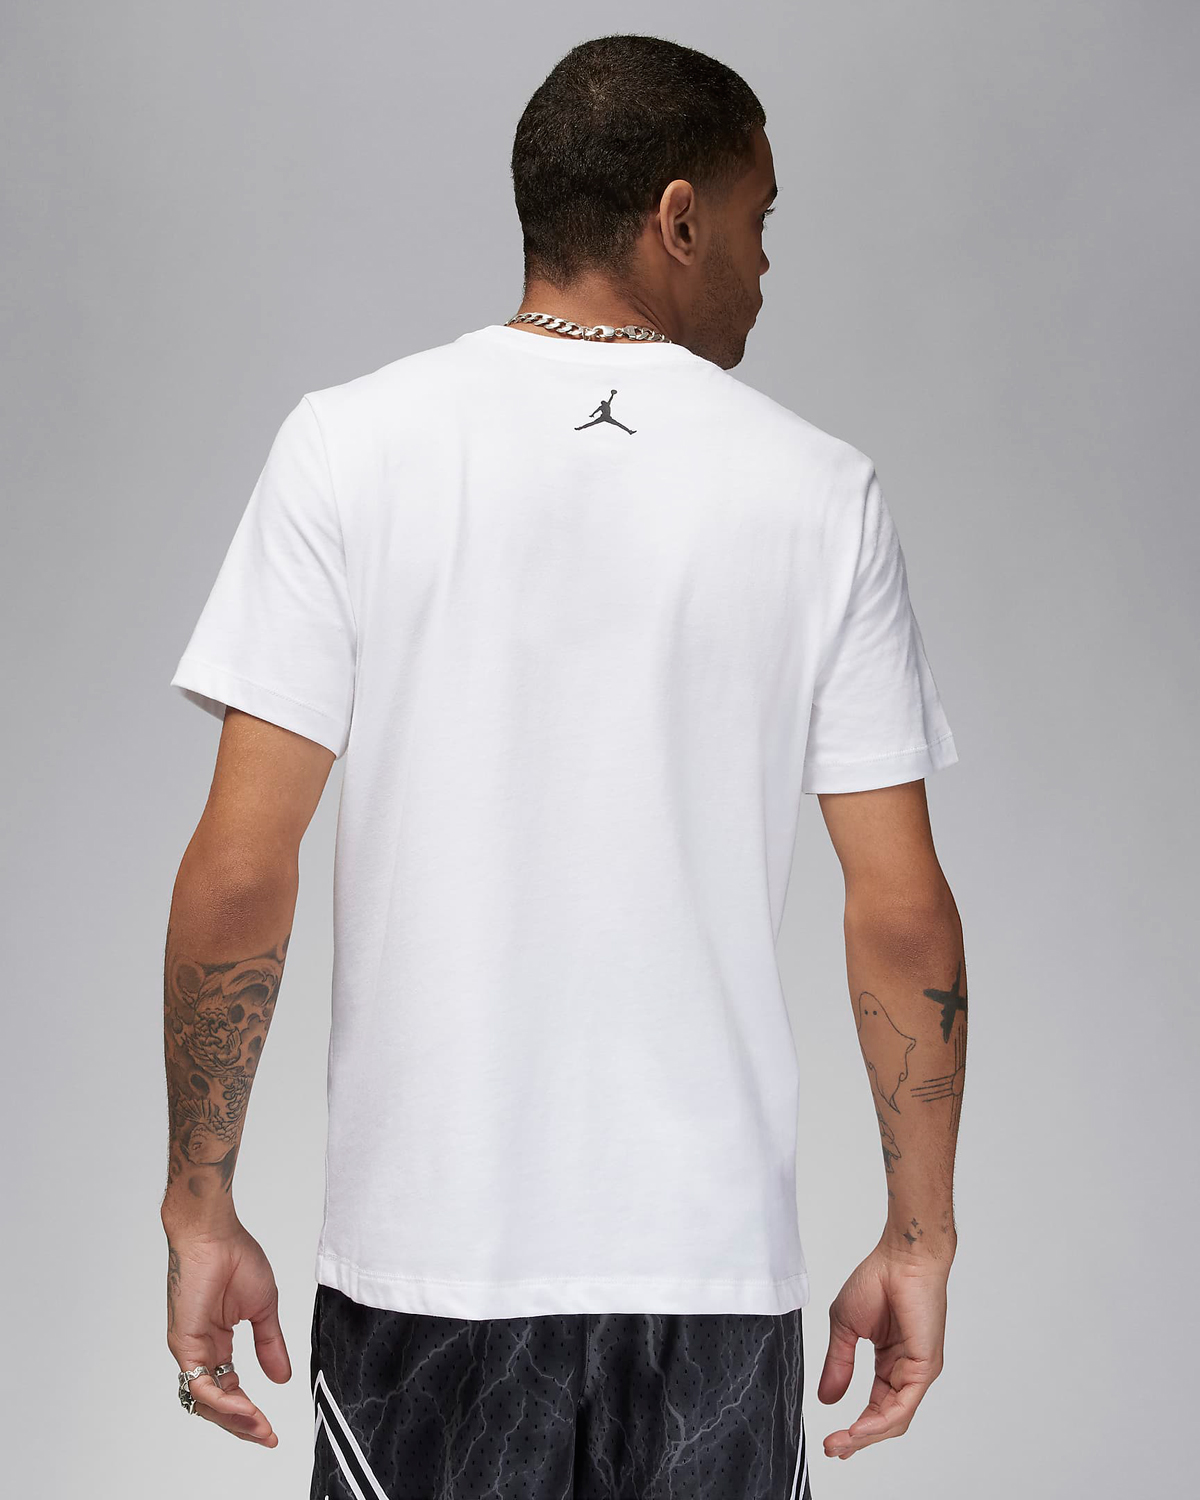 Jordan-Dri-Fit-Sport-Graphic-T-Shirt-White-Black-2